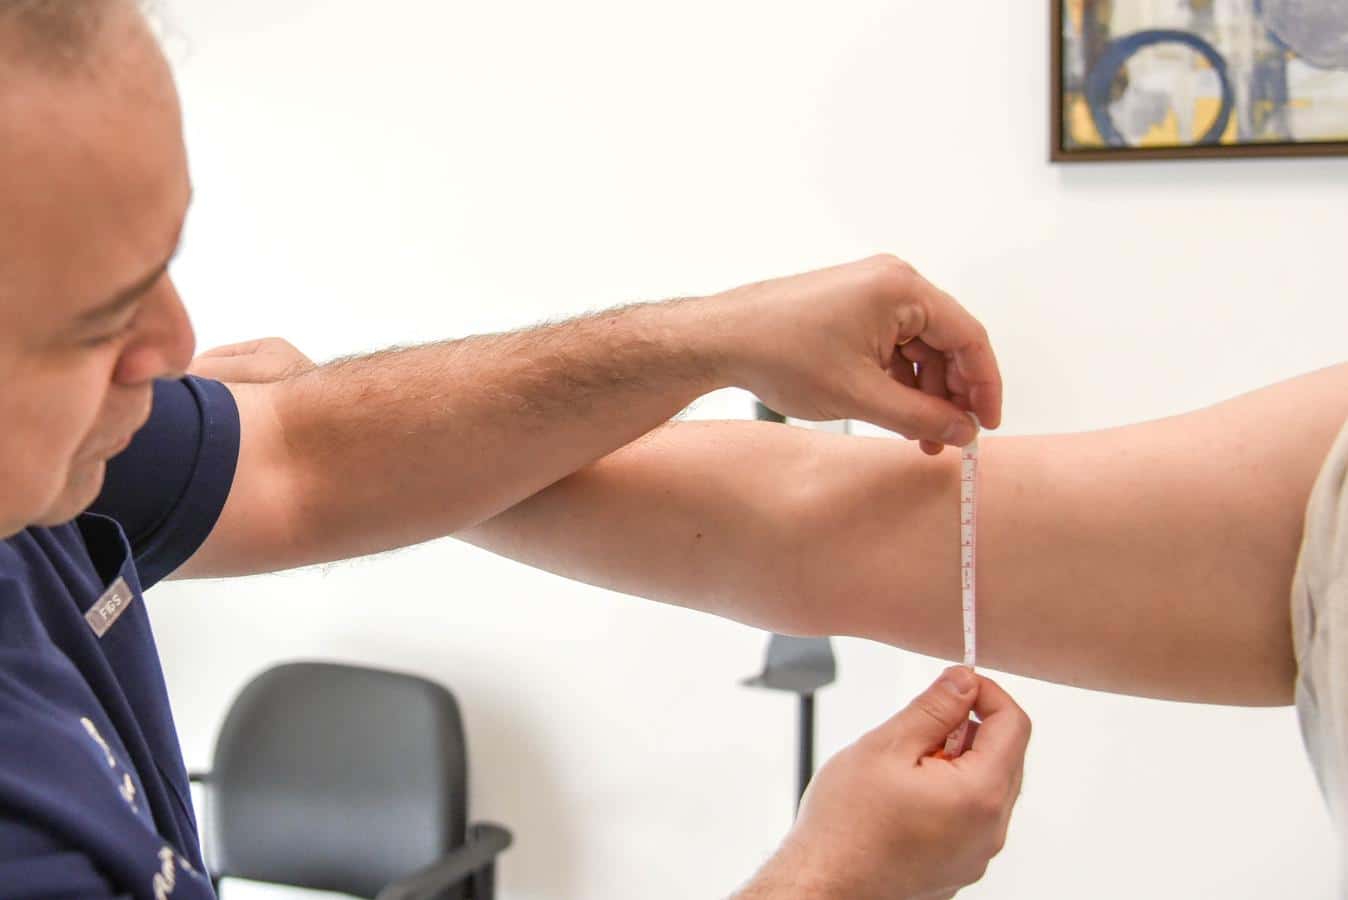 Dr. Ghaznavi Arm Lift Patient Arm Measurements